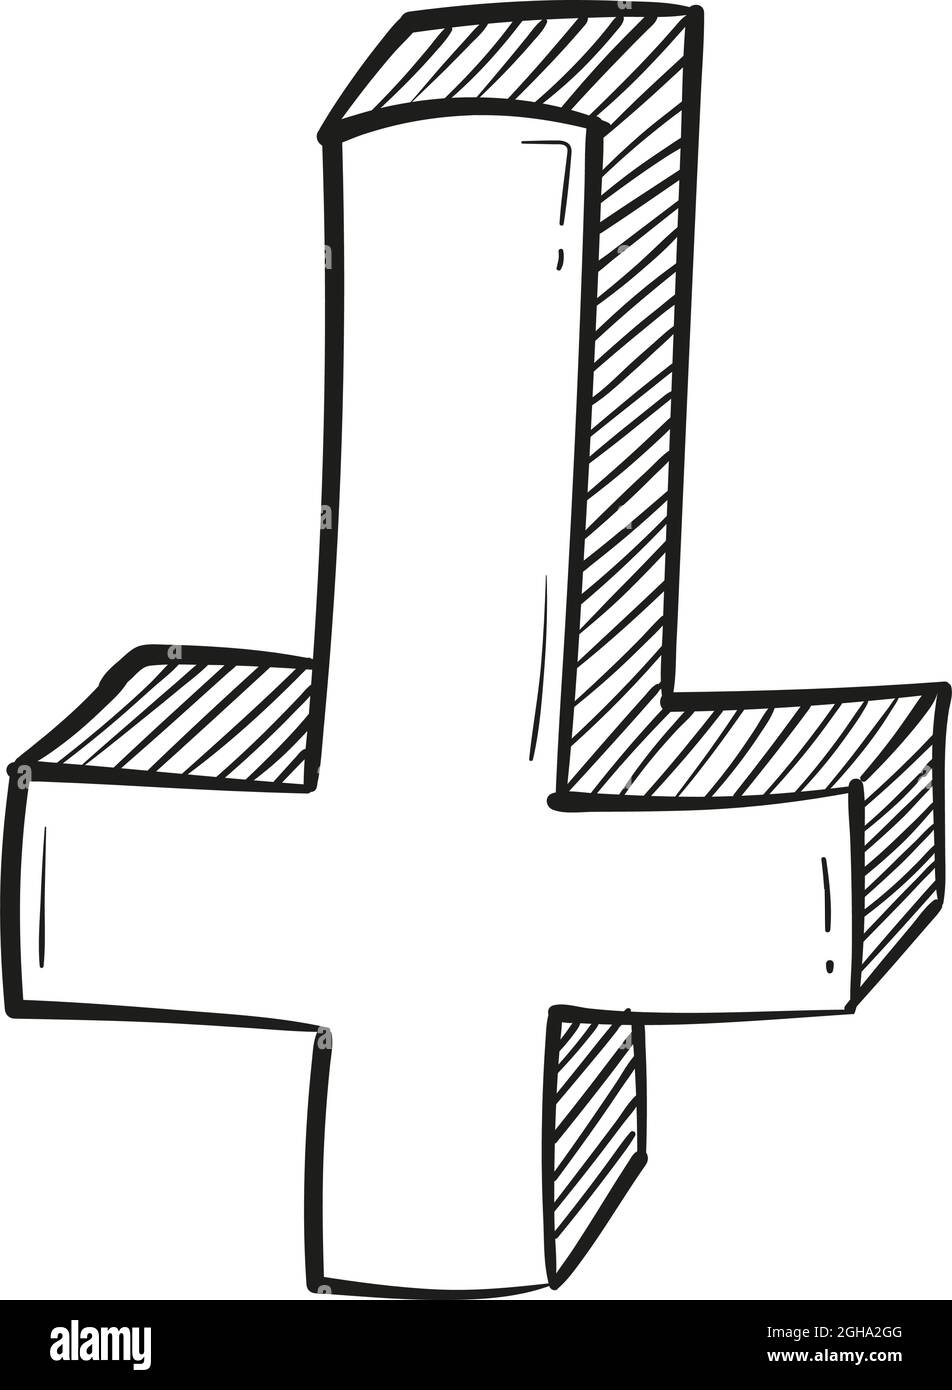 Handgezeichnetes invertiertes Kreuz-Symbol im Doodle-Stil isoliert. Stock Vektor